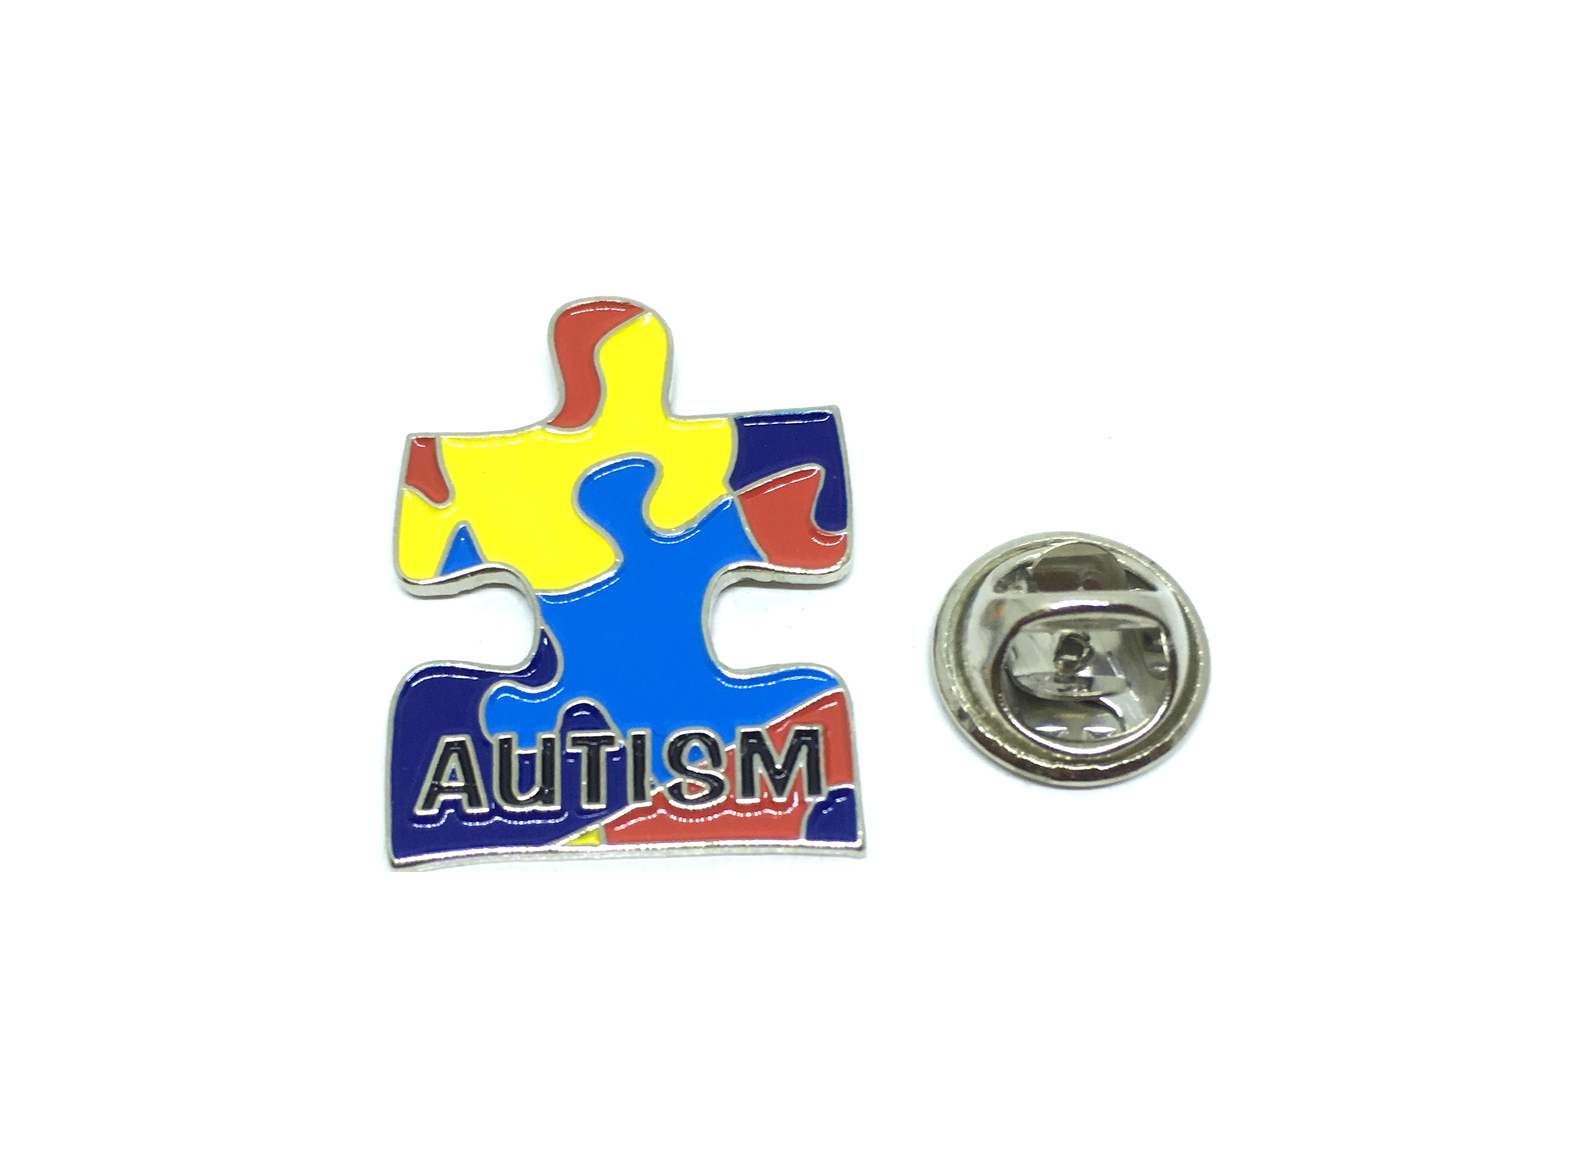 Autism Puzzle Pin